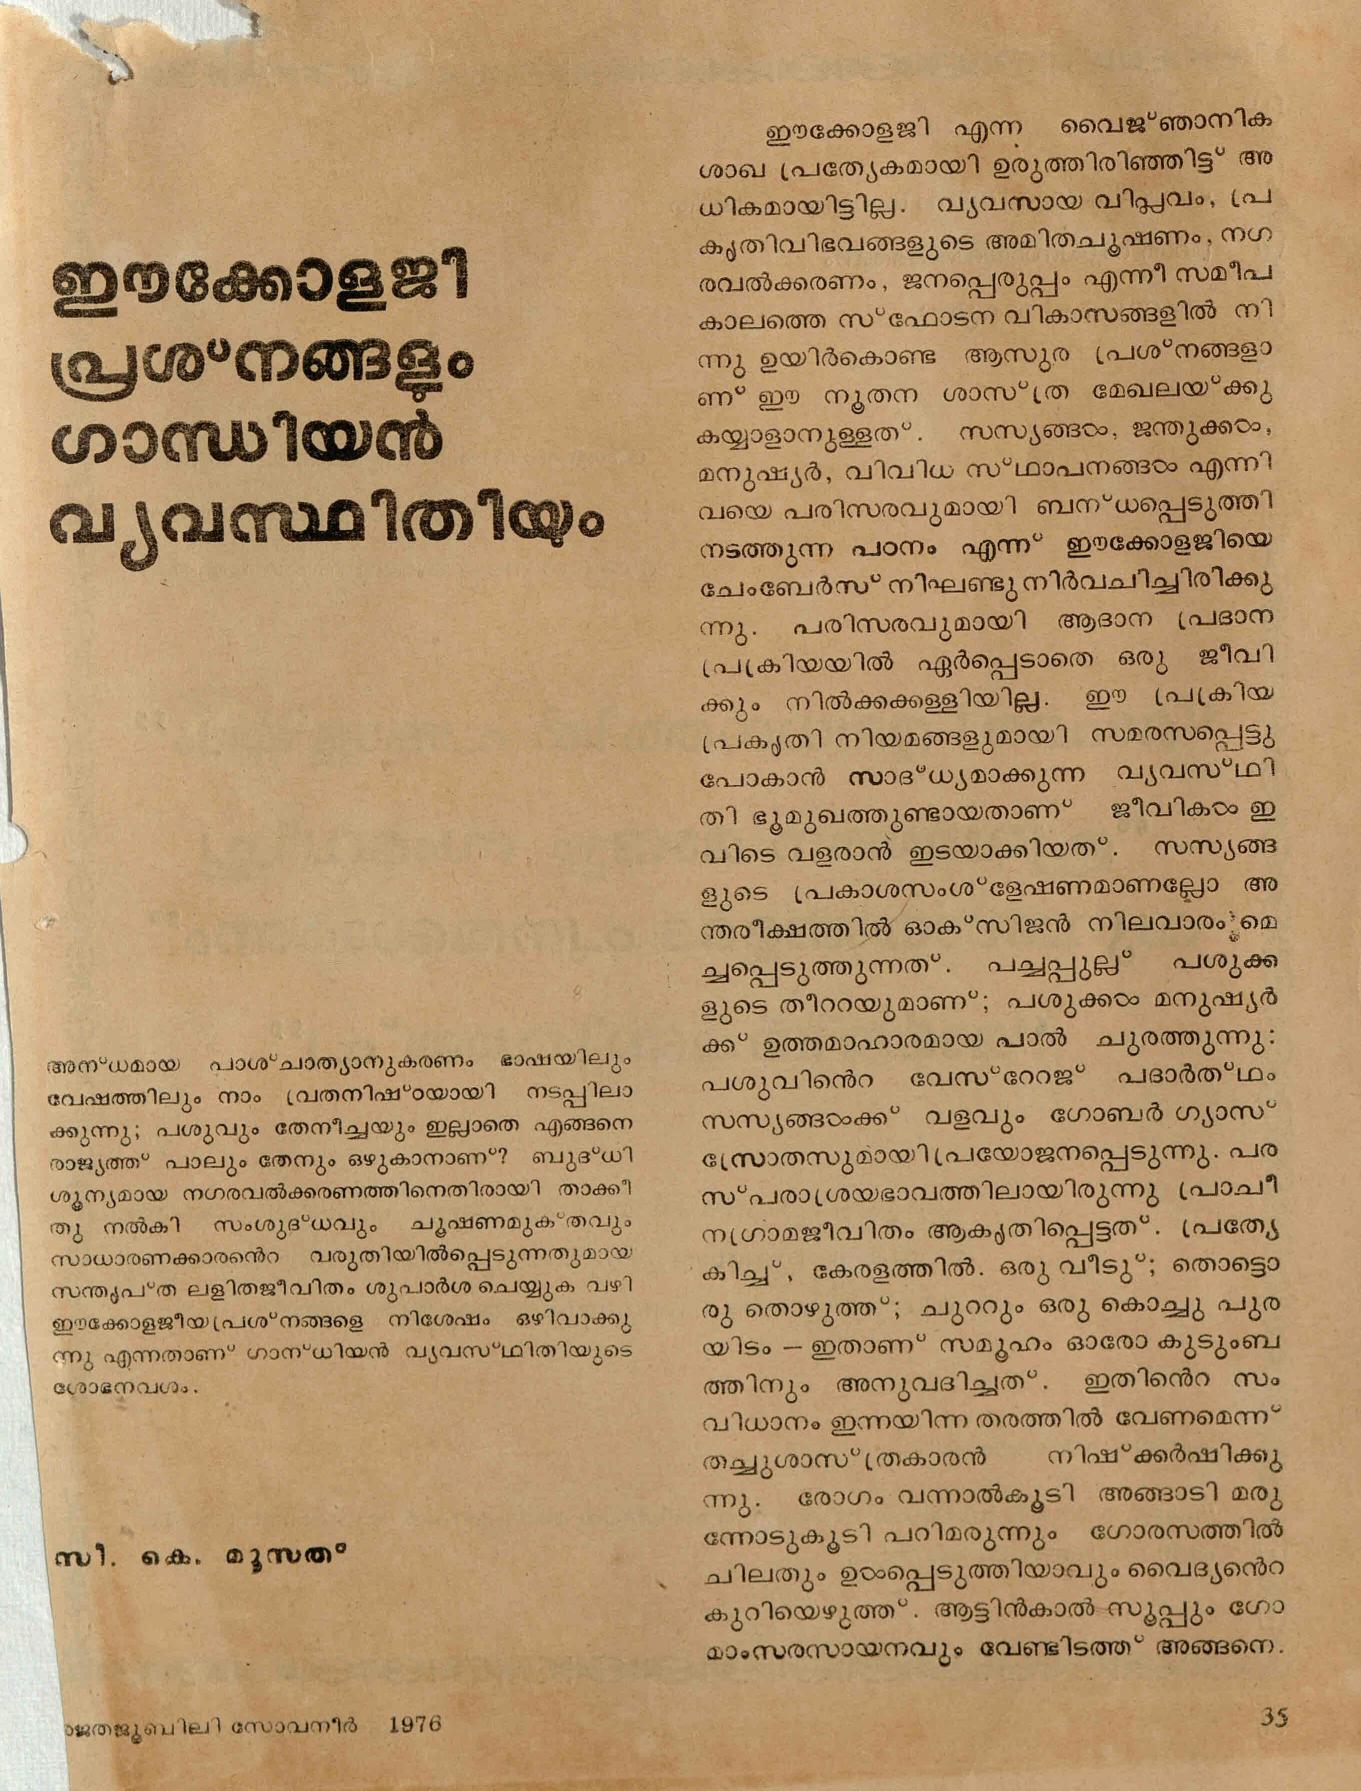 1976 - ഈക്കോളജി പ്രശ്നങ്ങളും ഗാന്ധിയൻ വ്യവസ്ഥിതിയും - സി. കെ.മൂസ്സത്